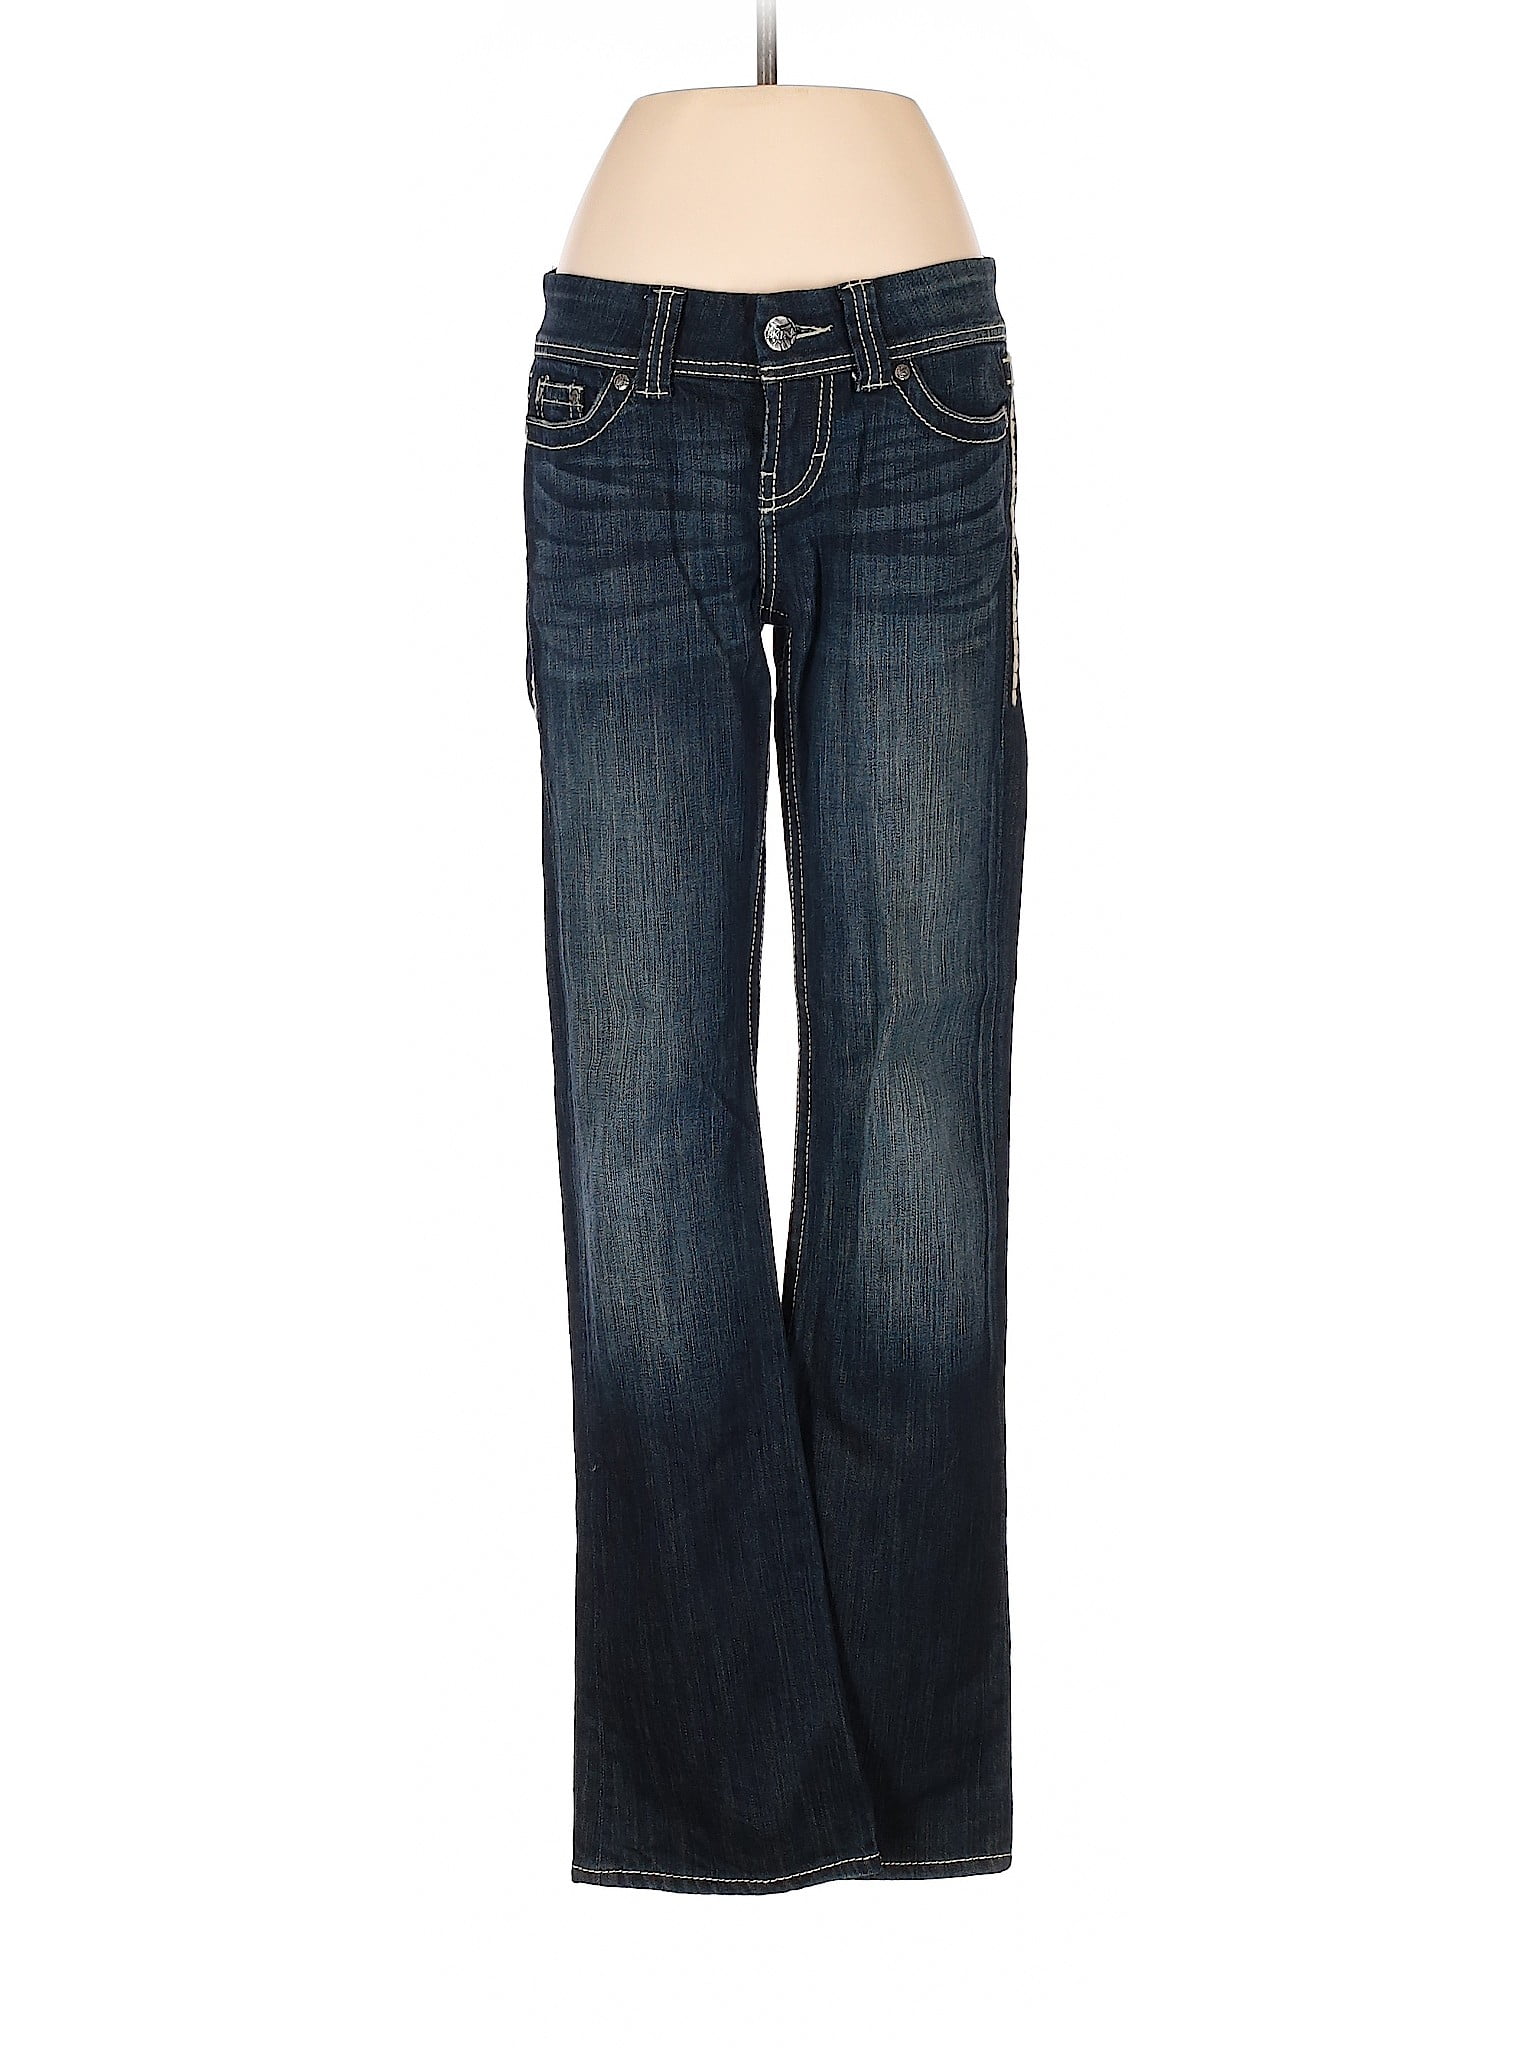 BKE - Pre-Owned BKE Women's Size 26W Jeans - Walmart.com - Walmart.com